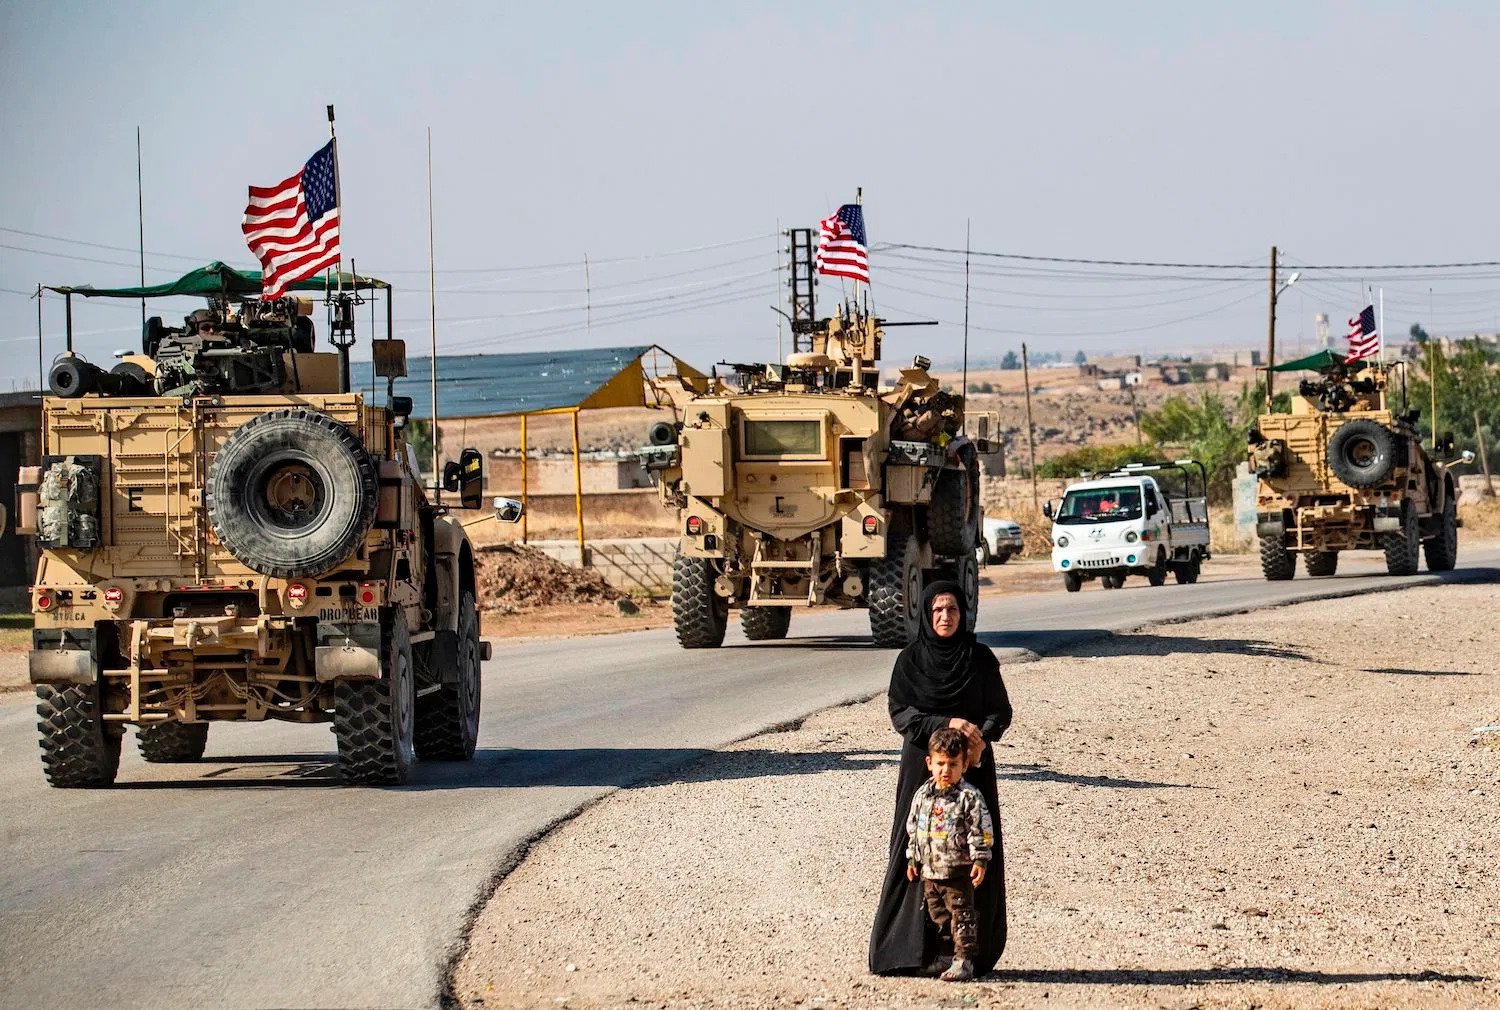 Τουρκικά δημοσιεύματα: Οι ΗΠΑ εφαρμόζουν το “βρώμικό” σχέδιό τους στην Συρία